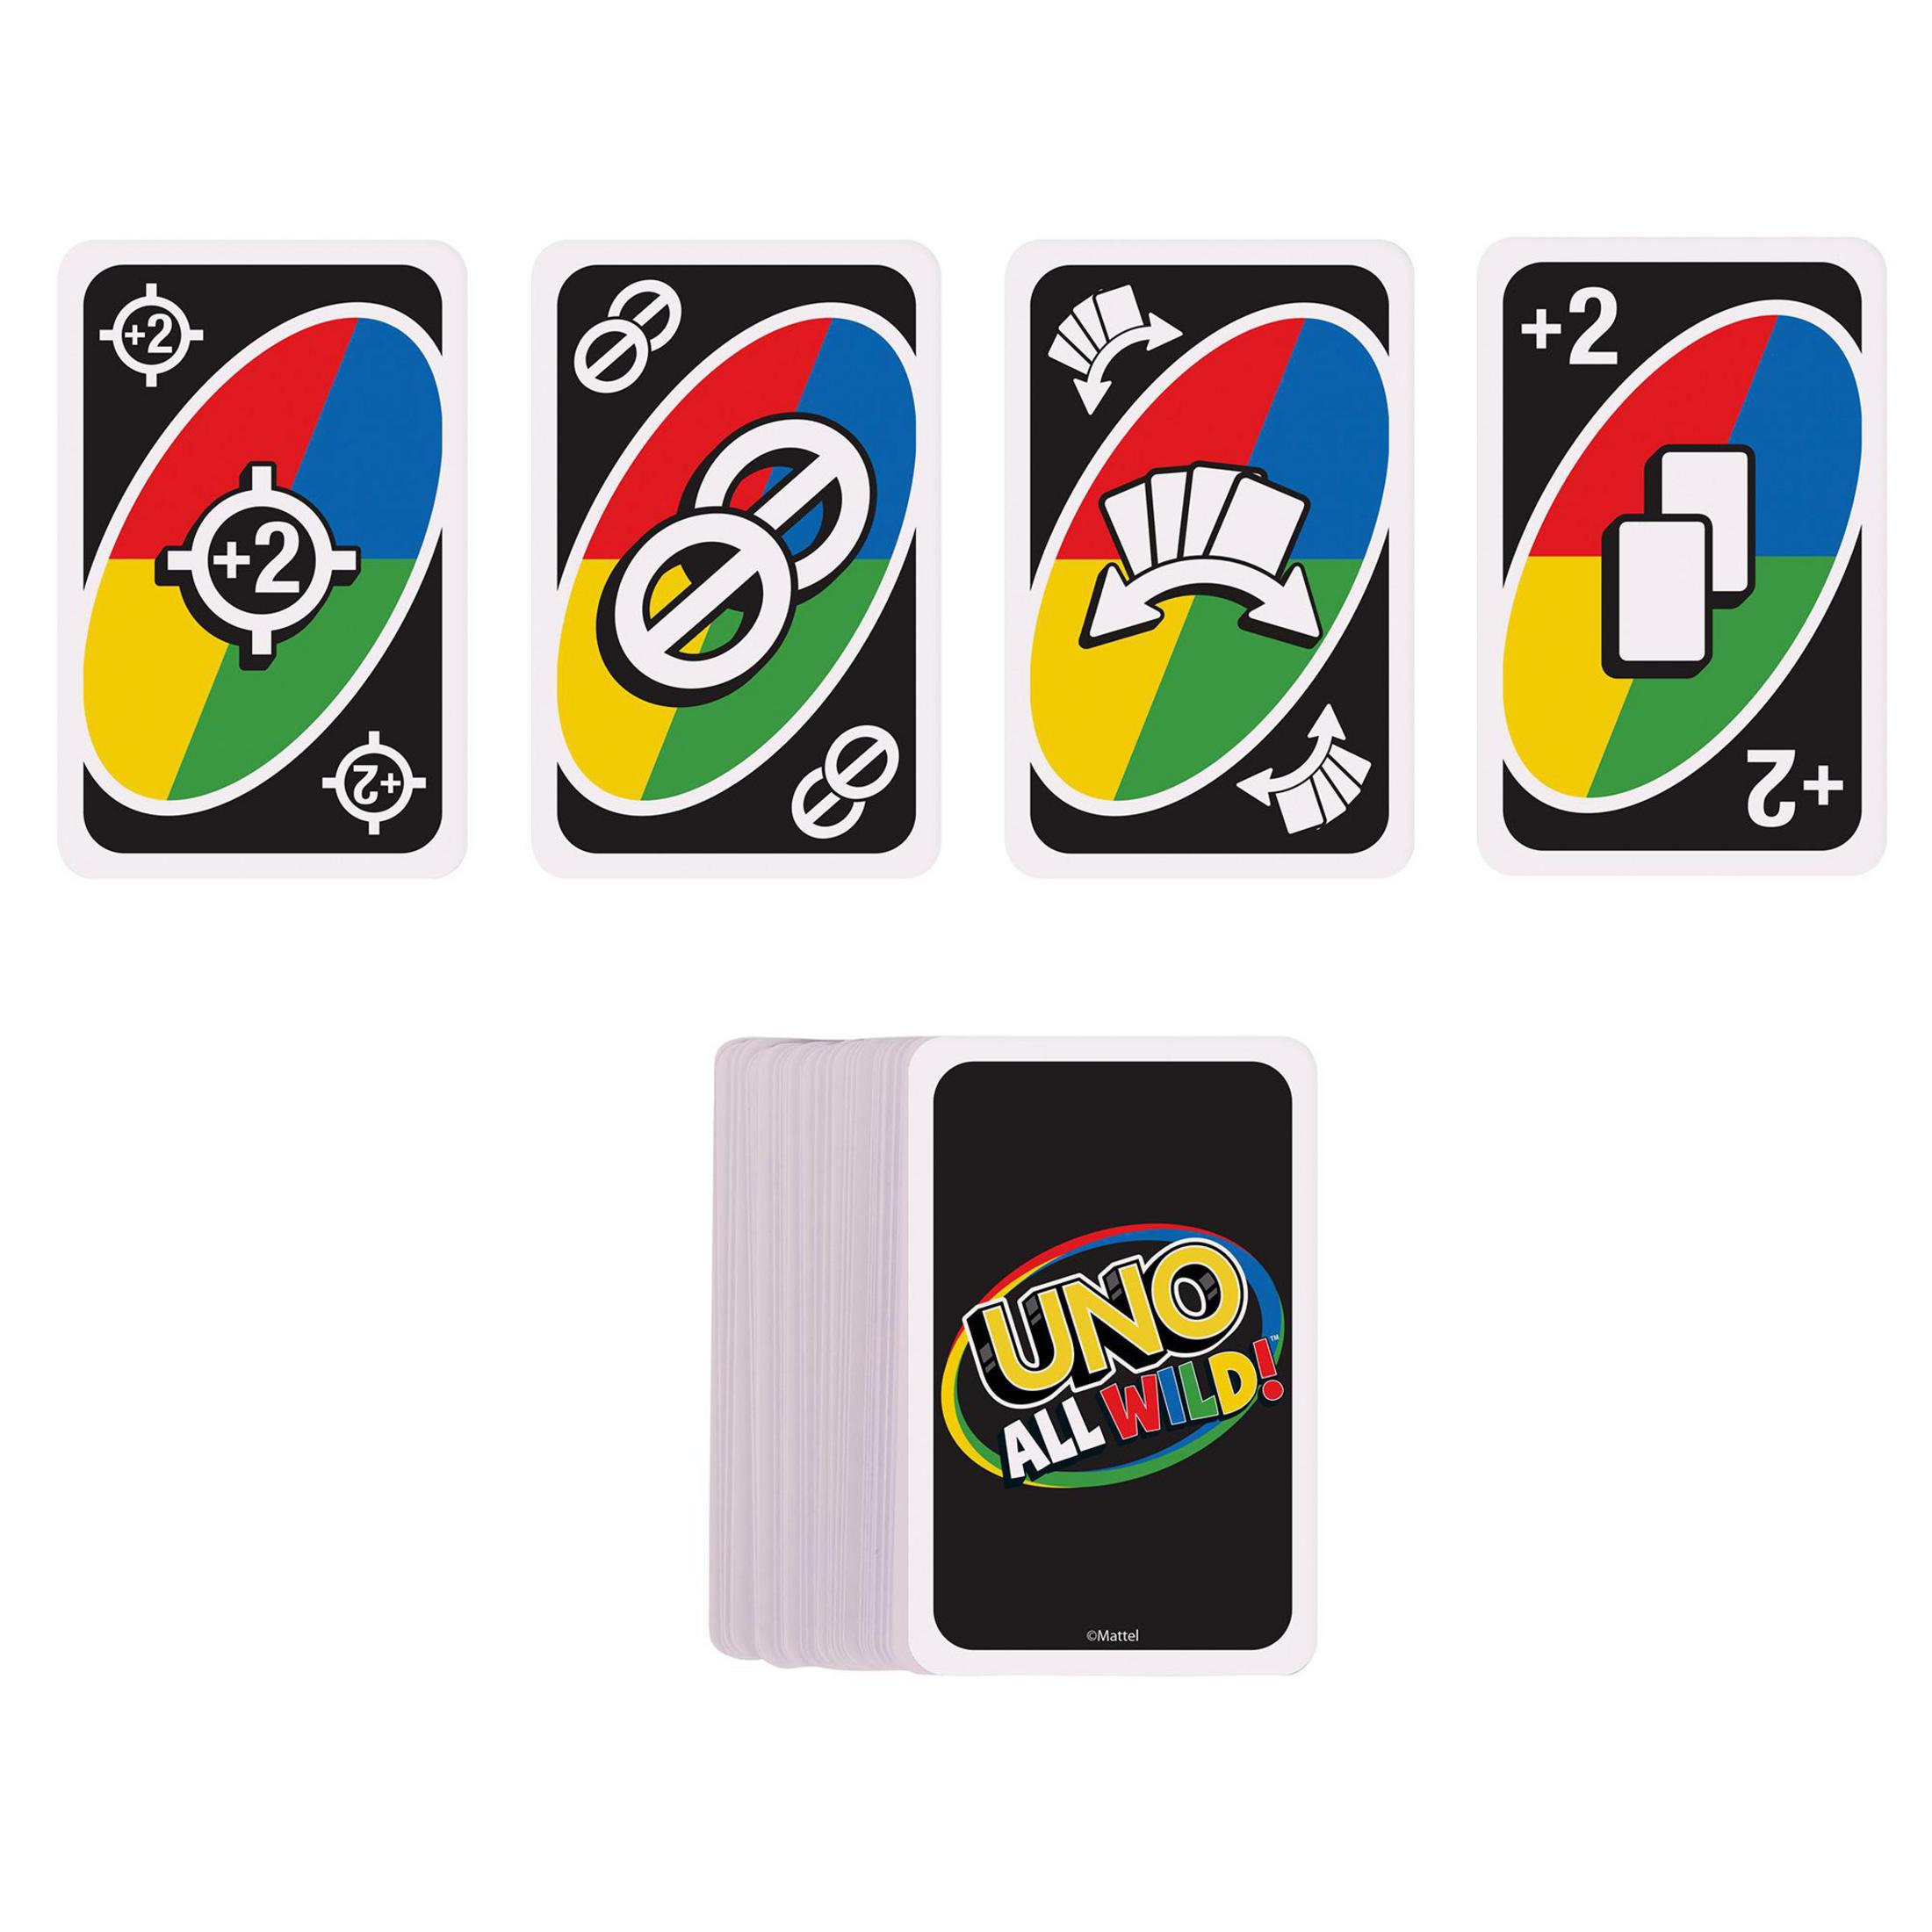 UNO Kartenspiel WILD ALL HHL33 GAMES MATTEL